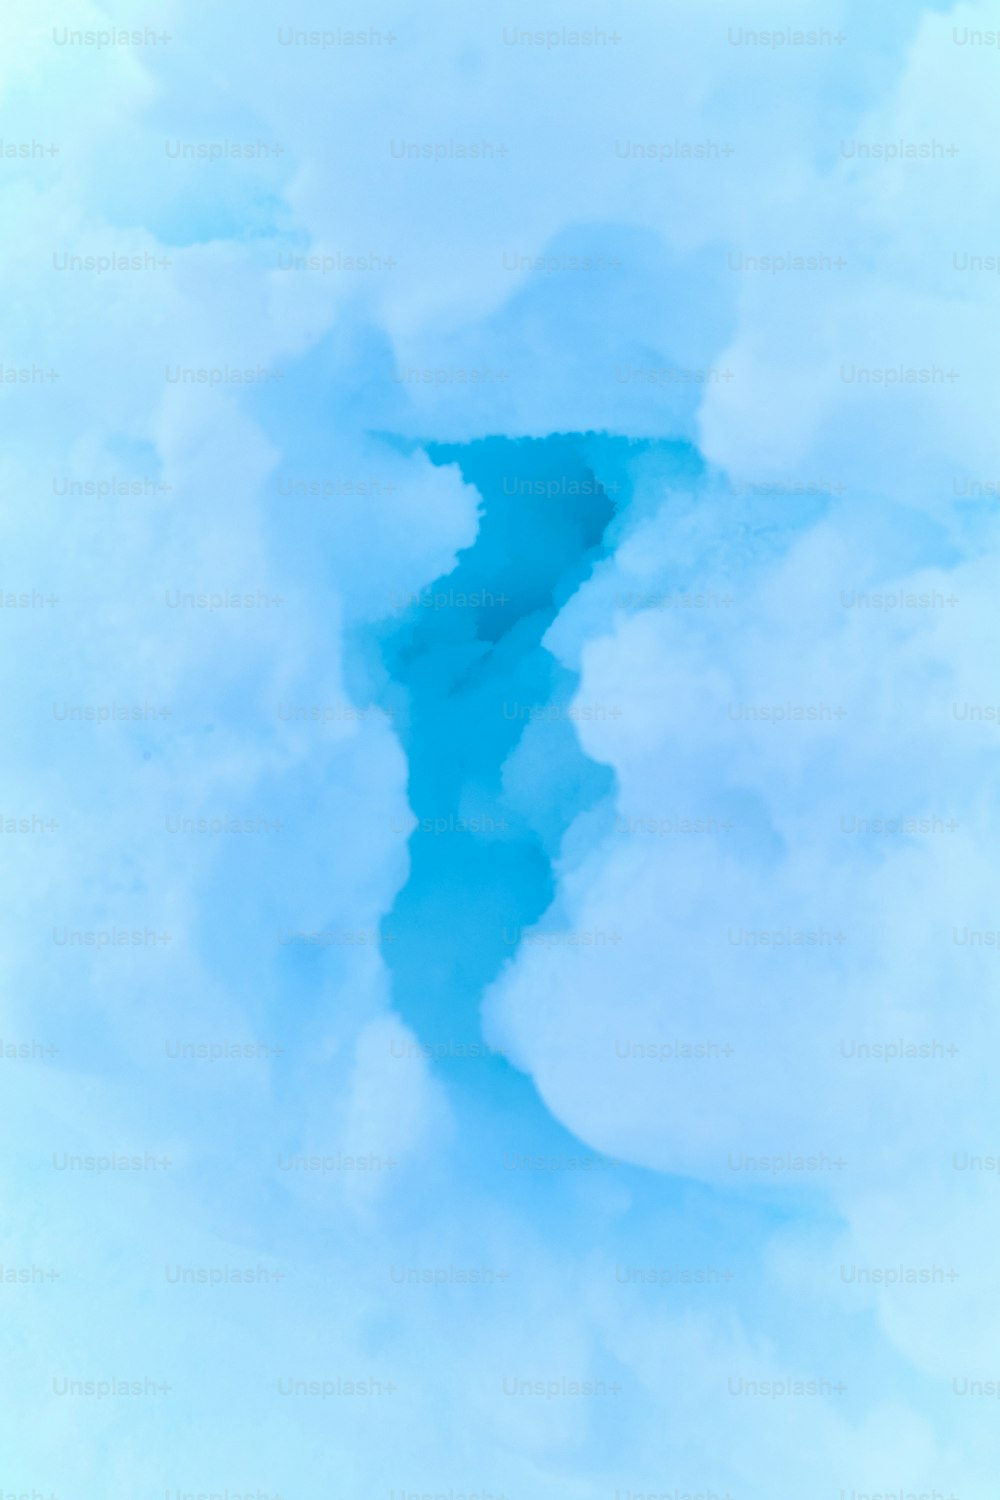 un getto d'acqua in mezzo a un cielo nuvoloso